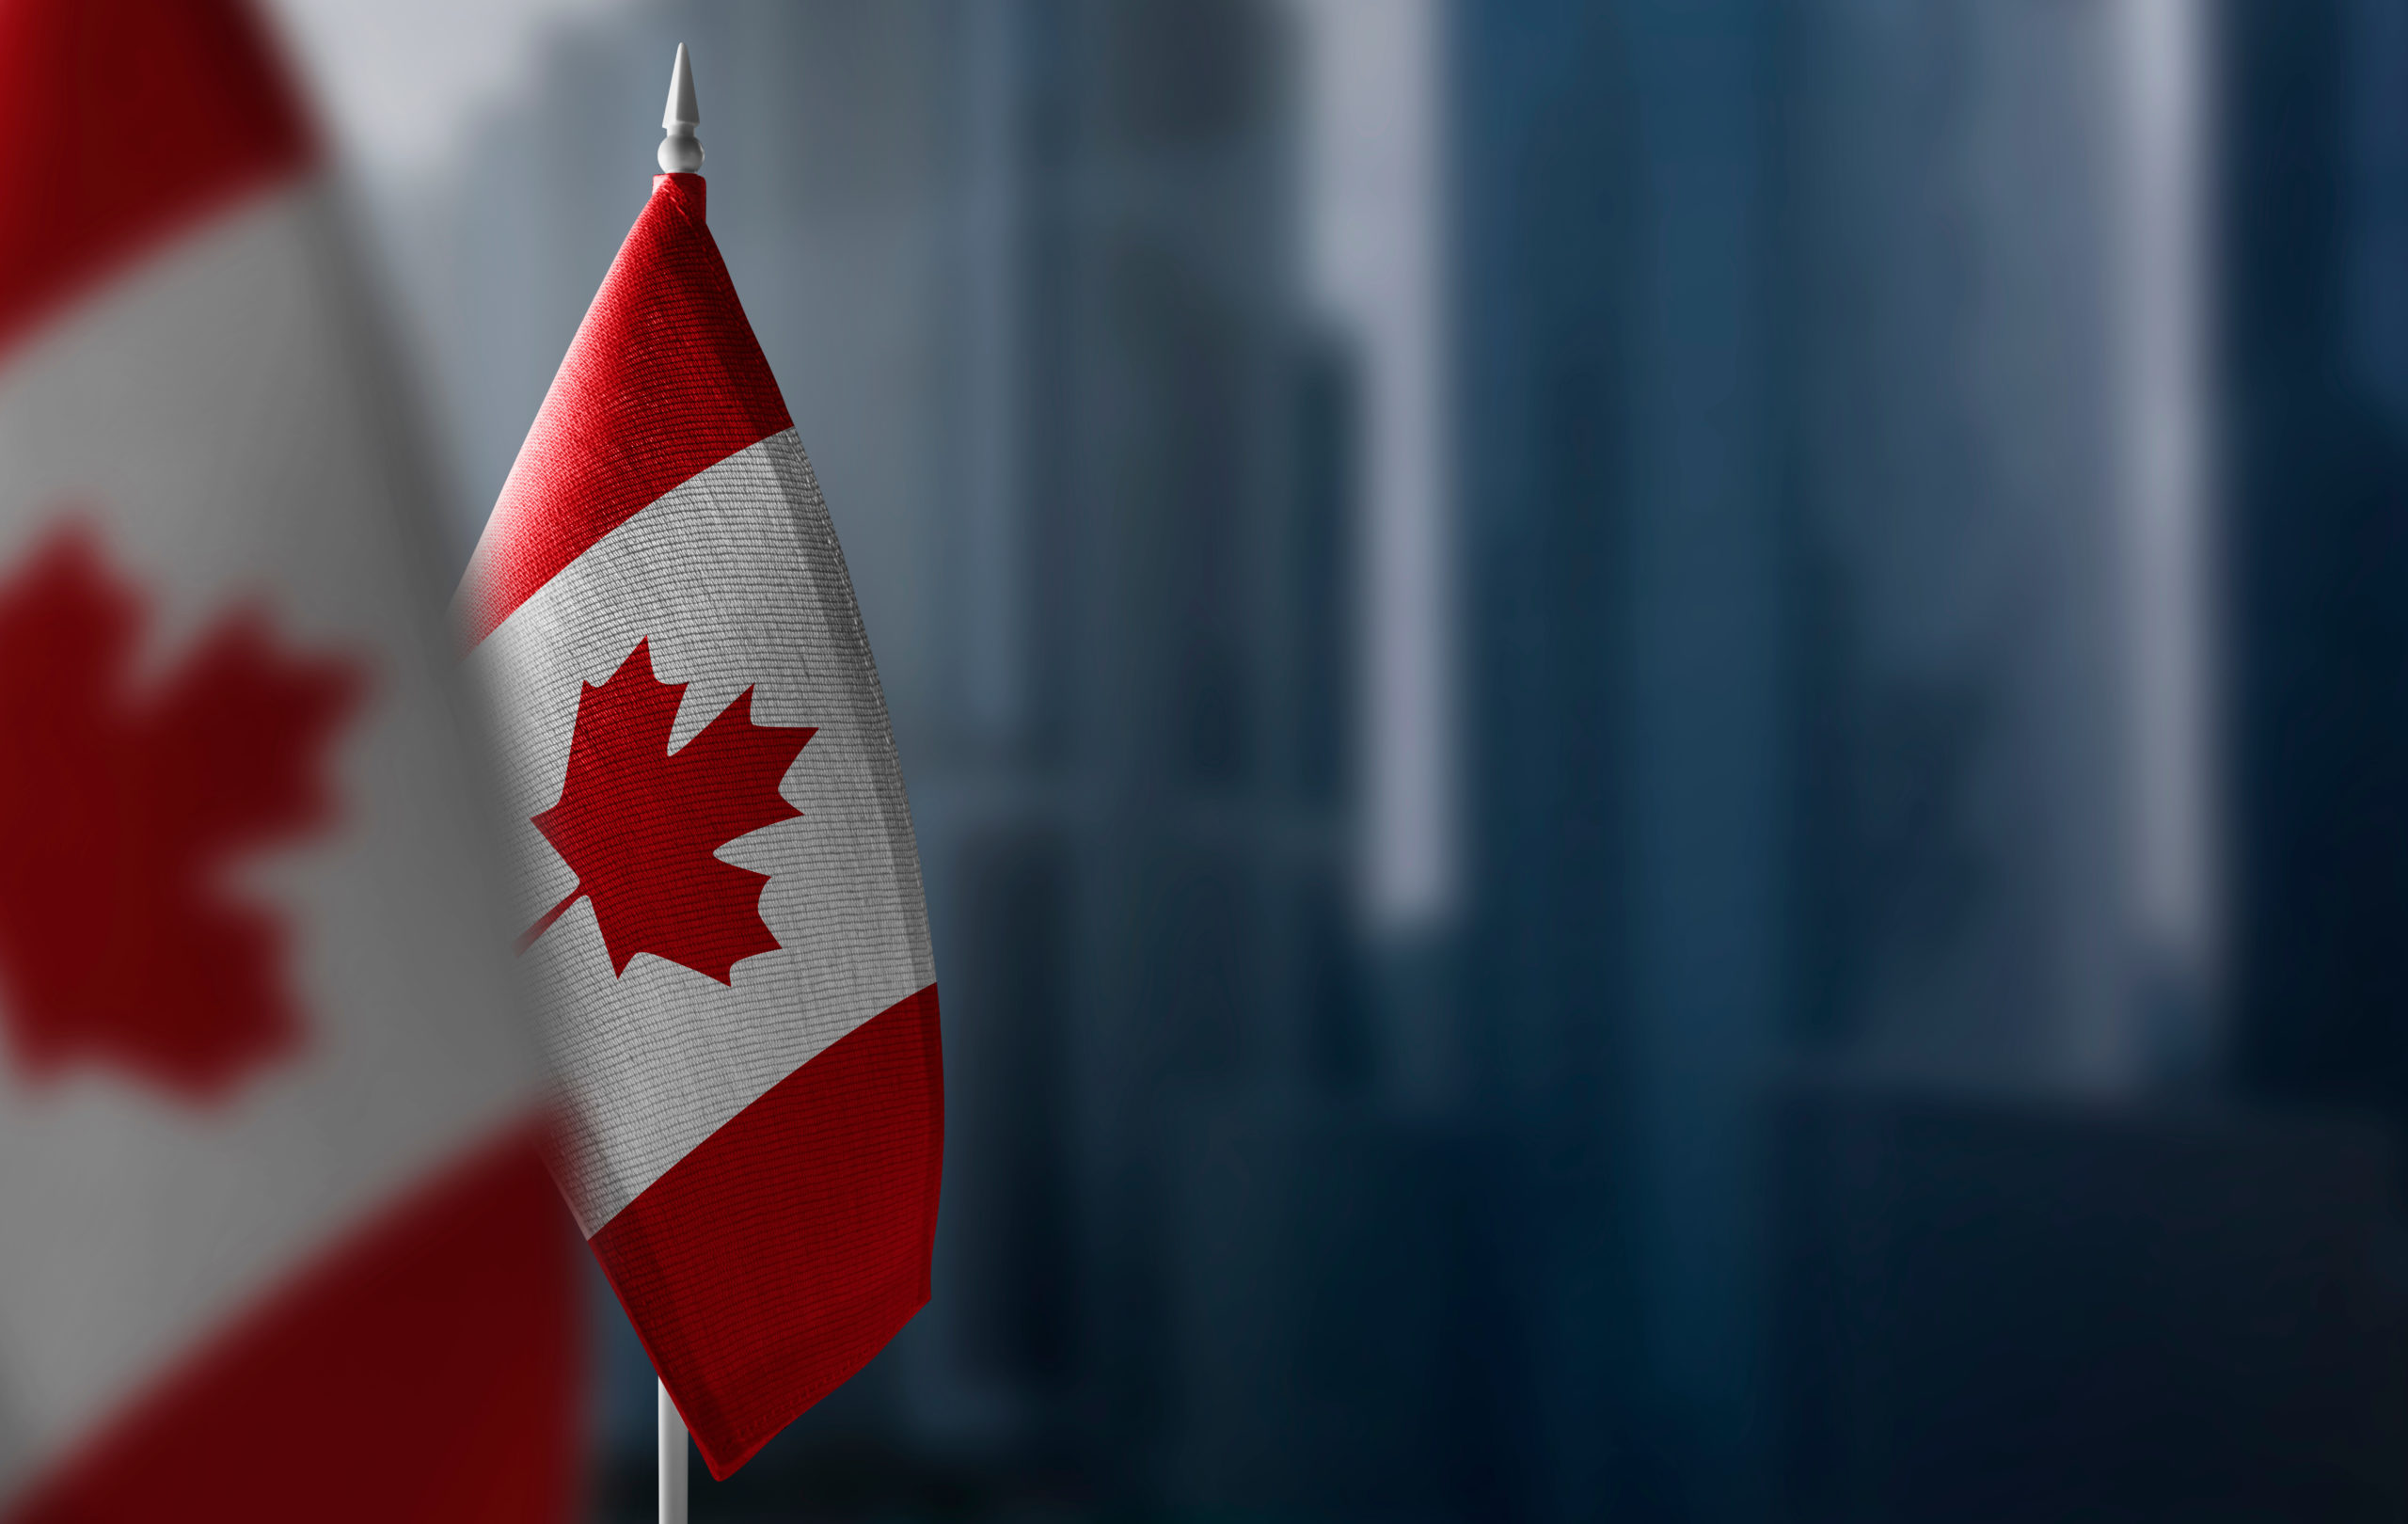 Bandeira Canada